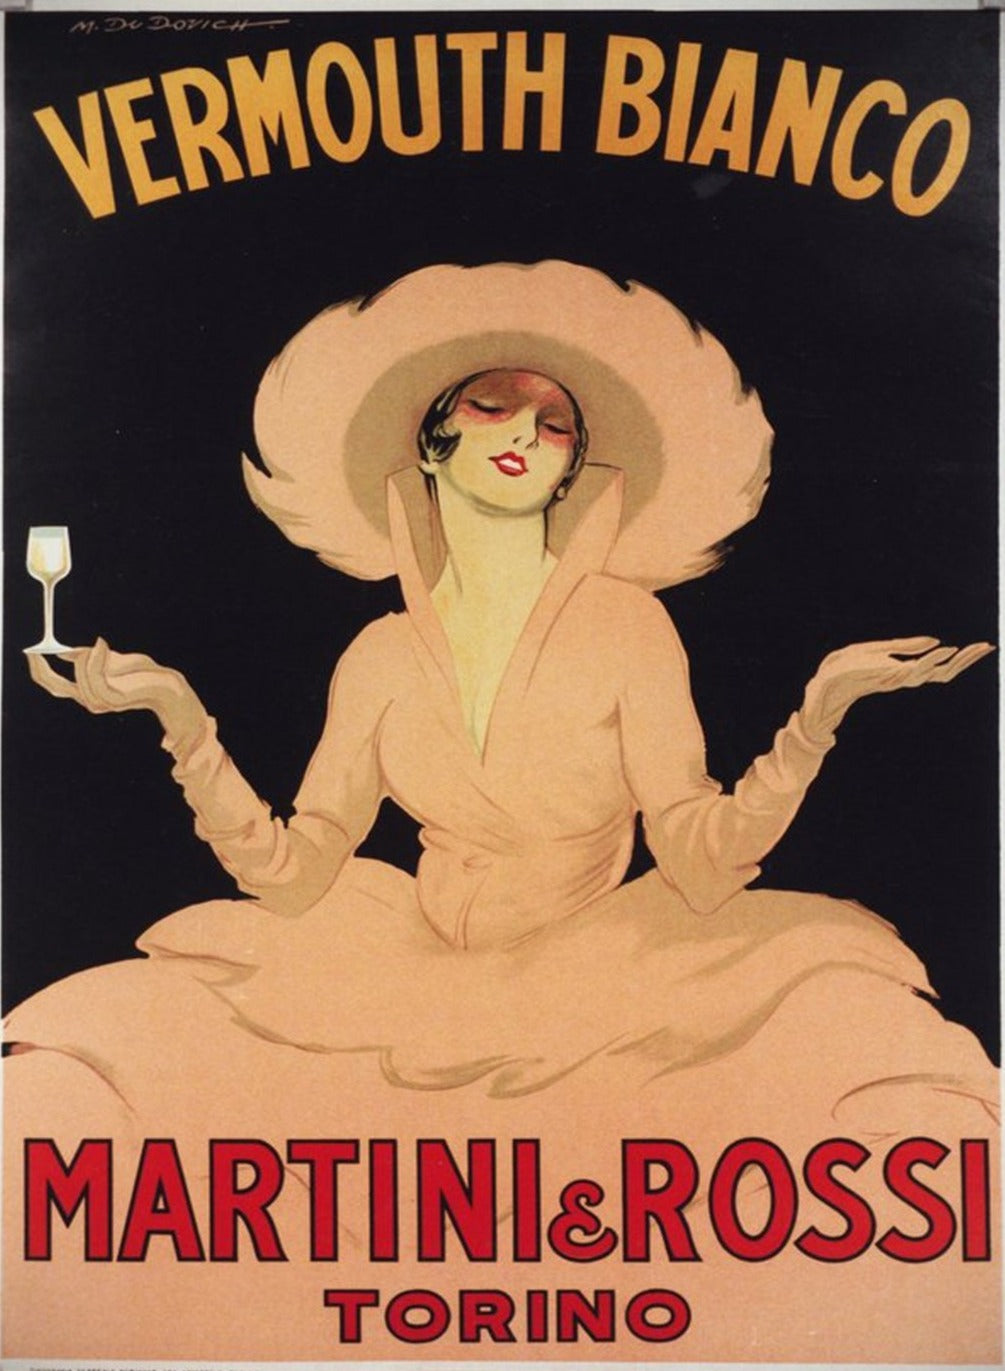 Martini & Rosso